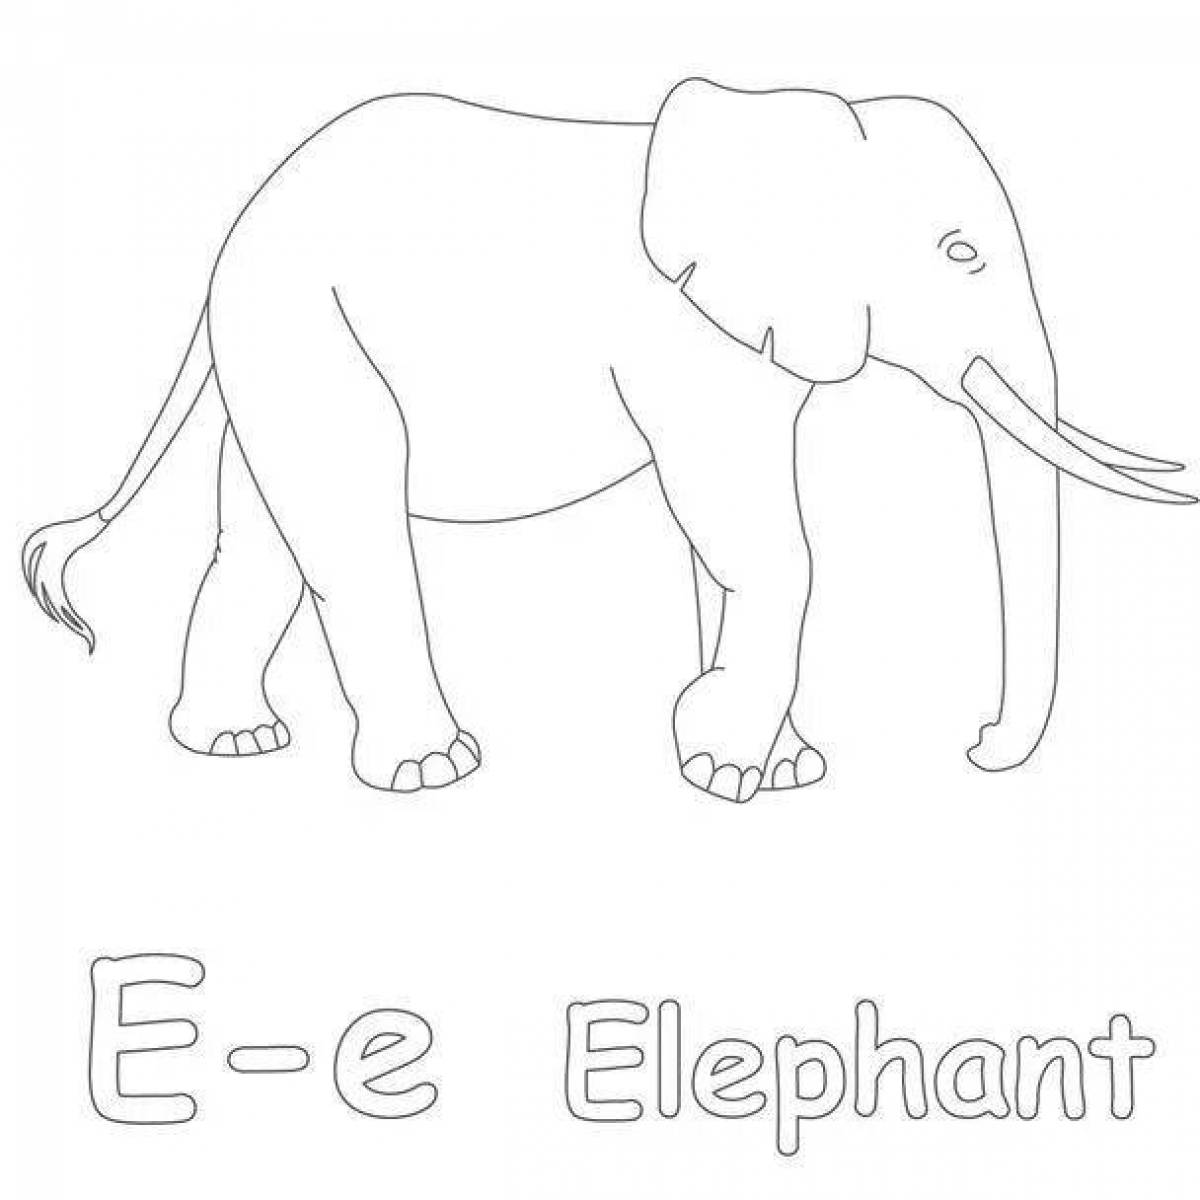 Elephant grand kuprin grade 3